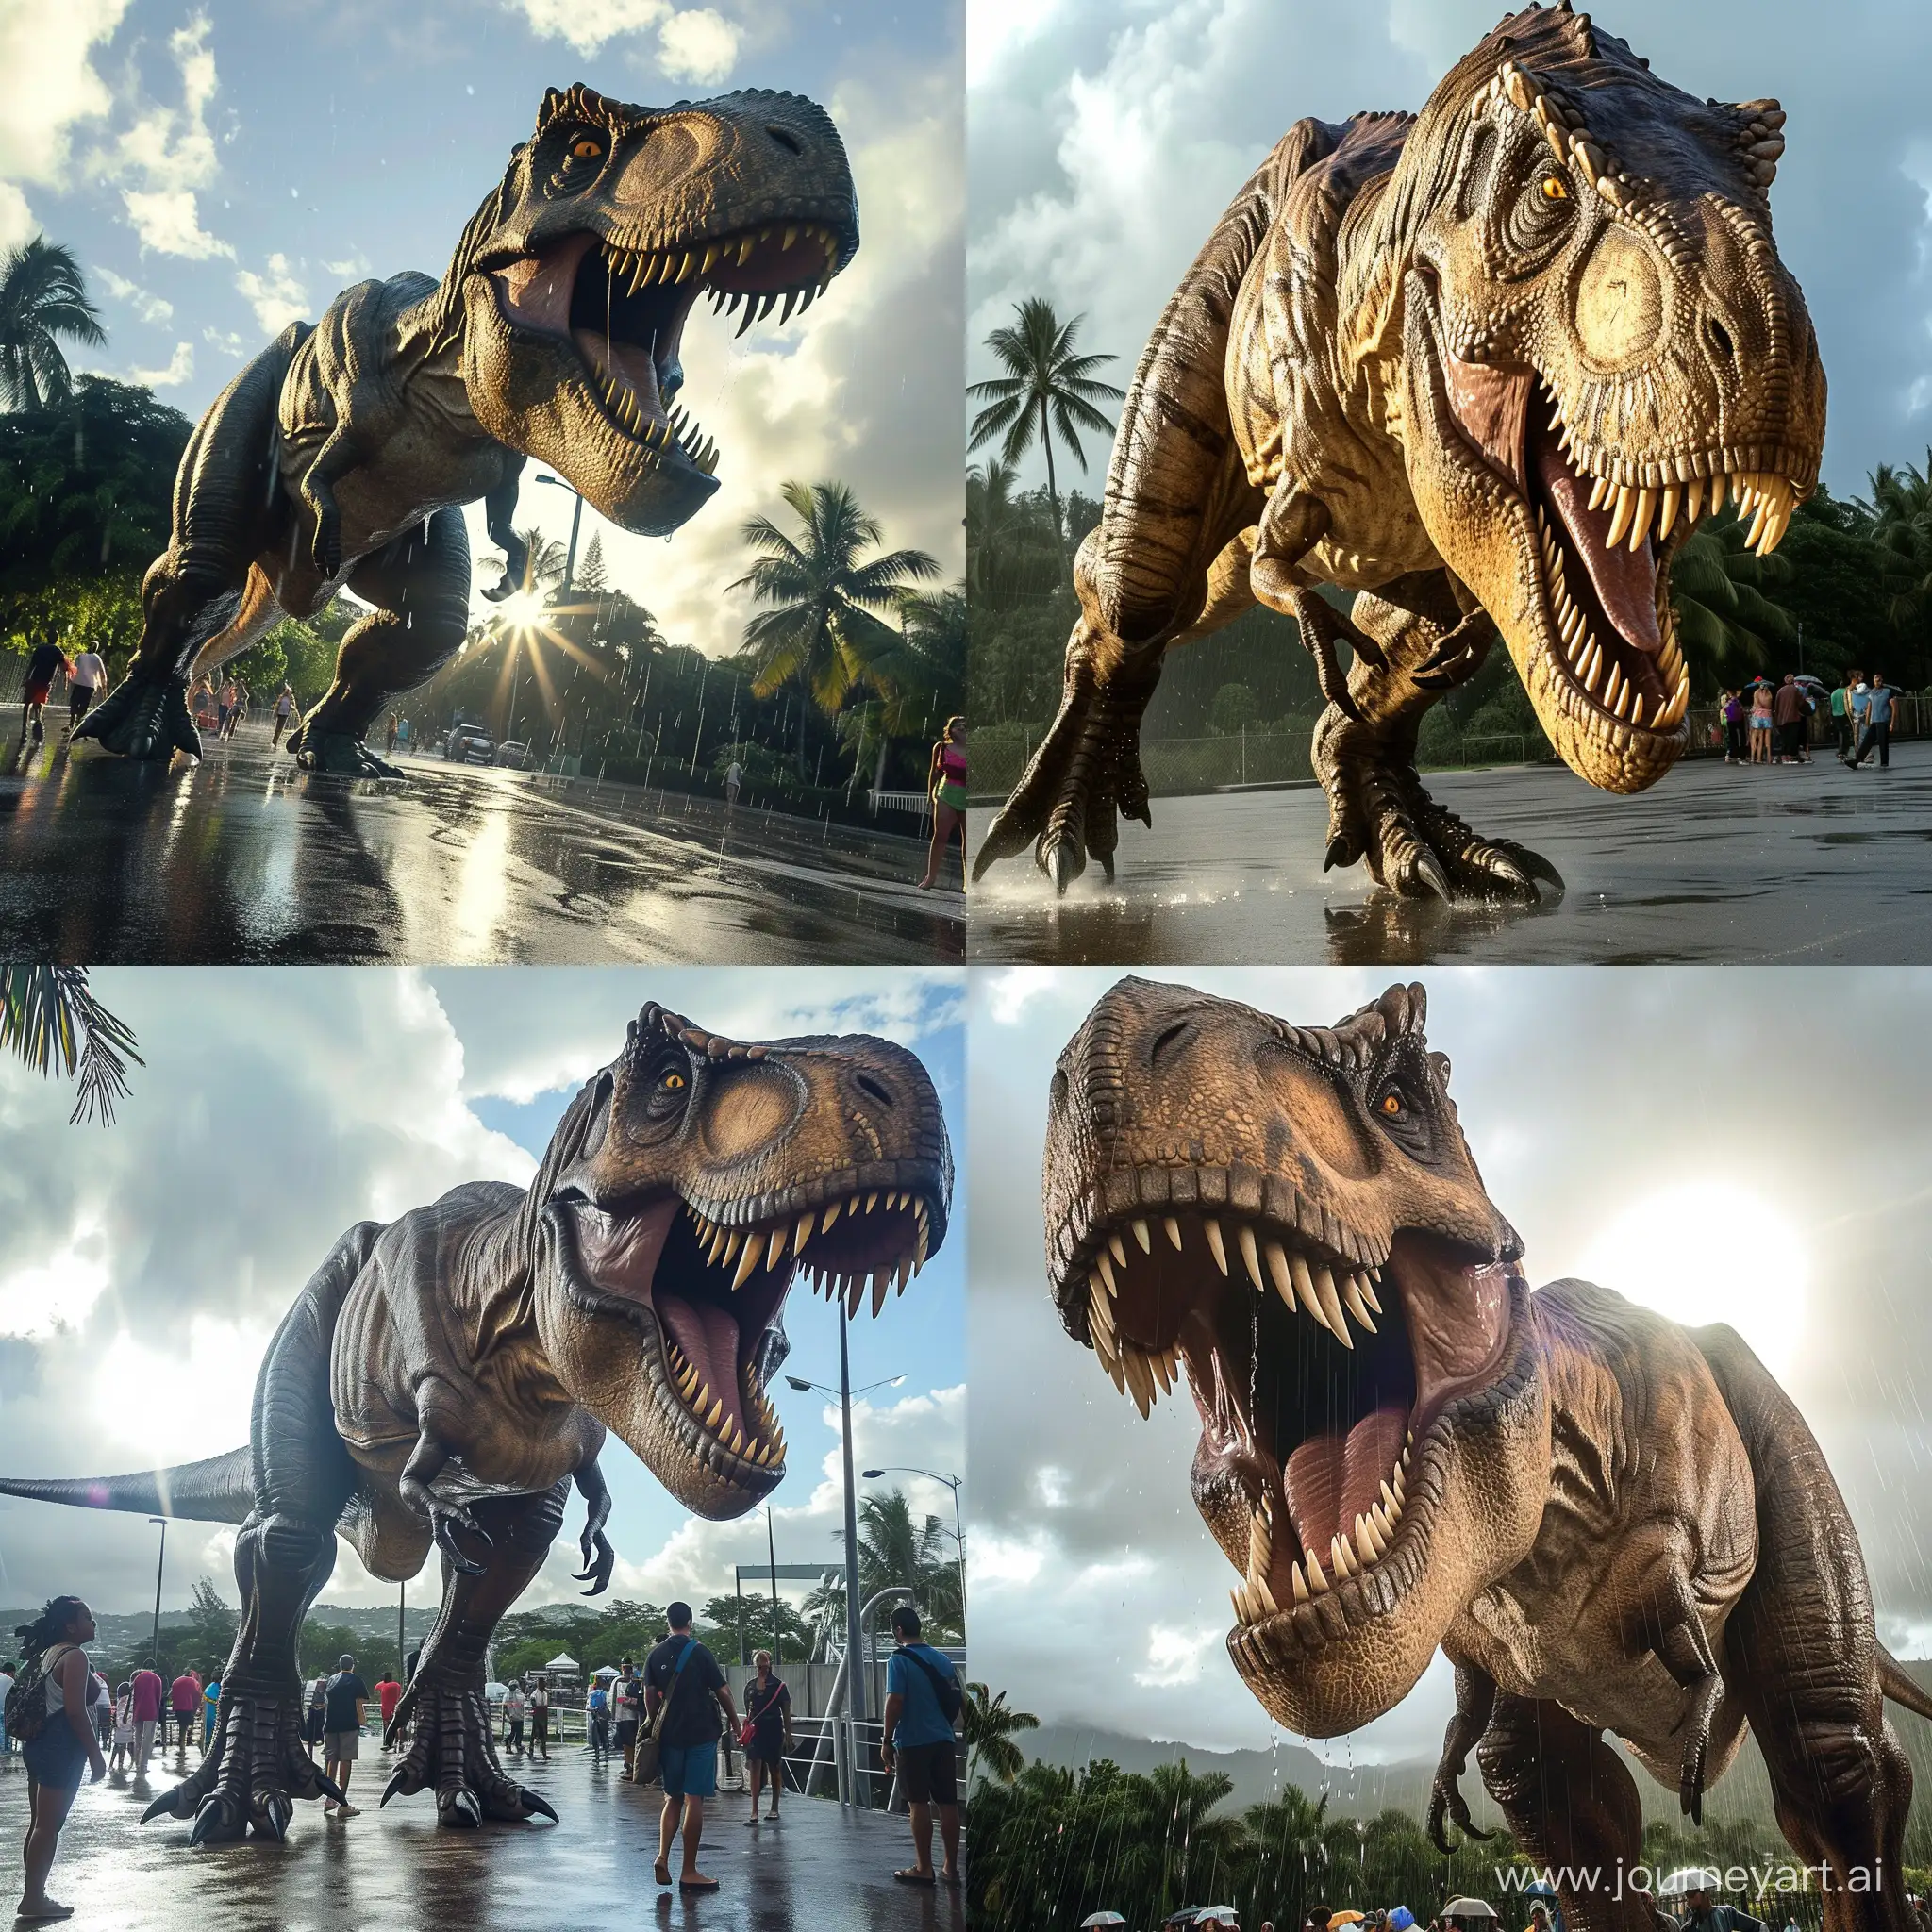 (Tyrannosaurus Rex, from Jurassic Park) in Suva fiji, terrorizing people, photorealistic, photo evidence, sun, rain,